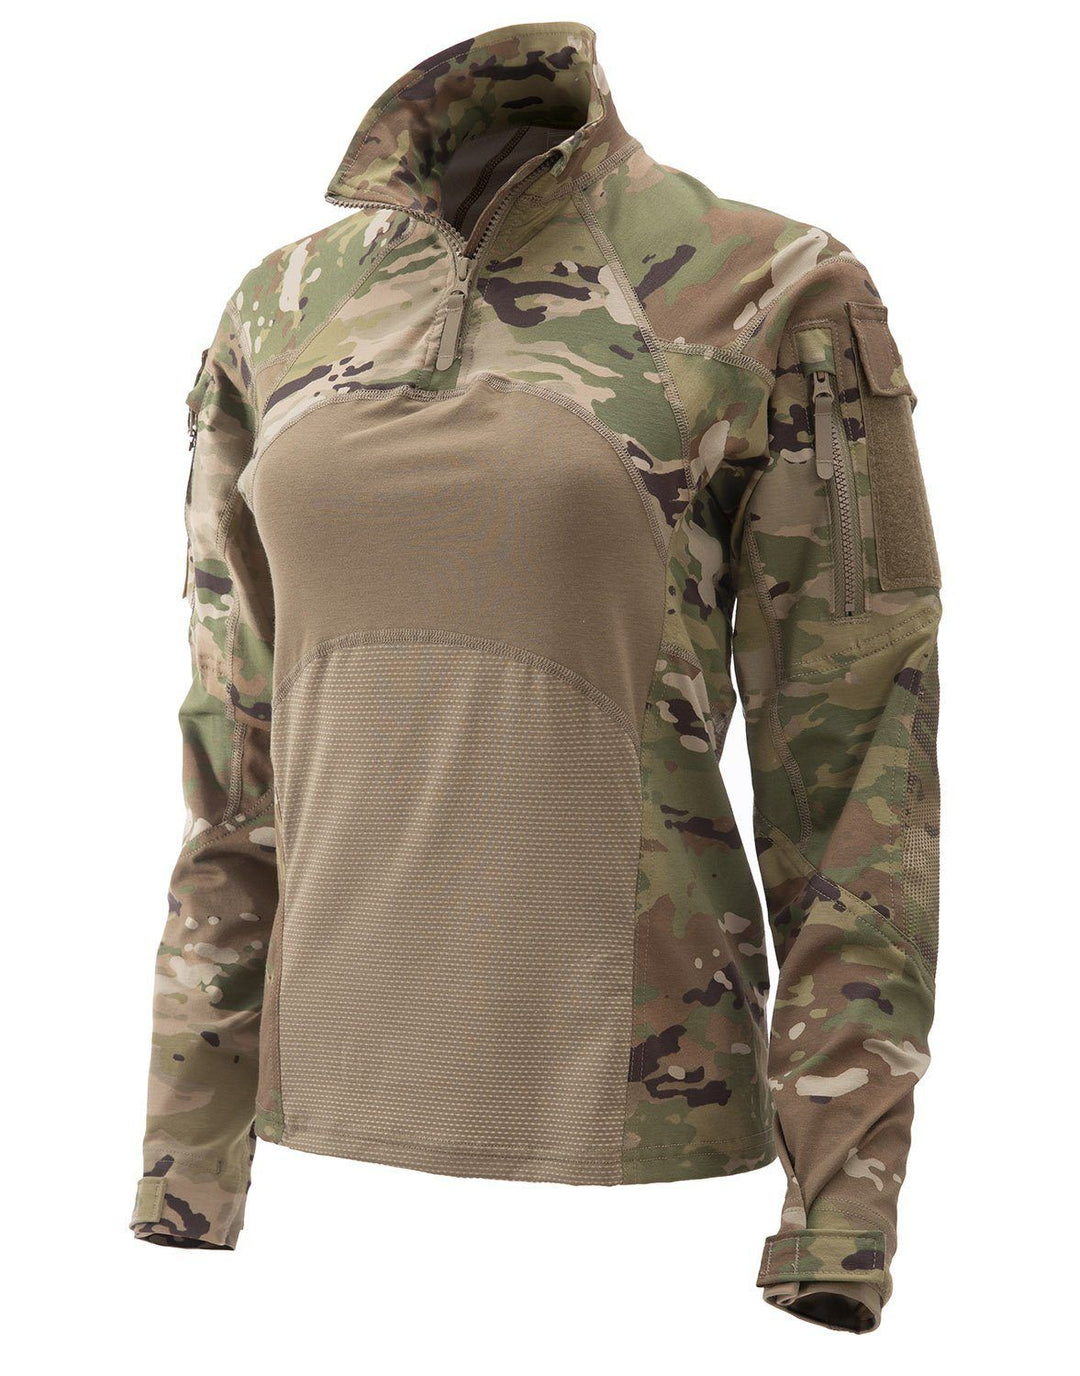 Apparel - Tops - Combat - MASSIF Advanced Quarter Zip FR Women's Fit Combat Shirt - MIL